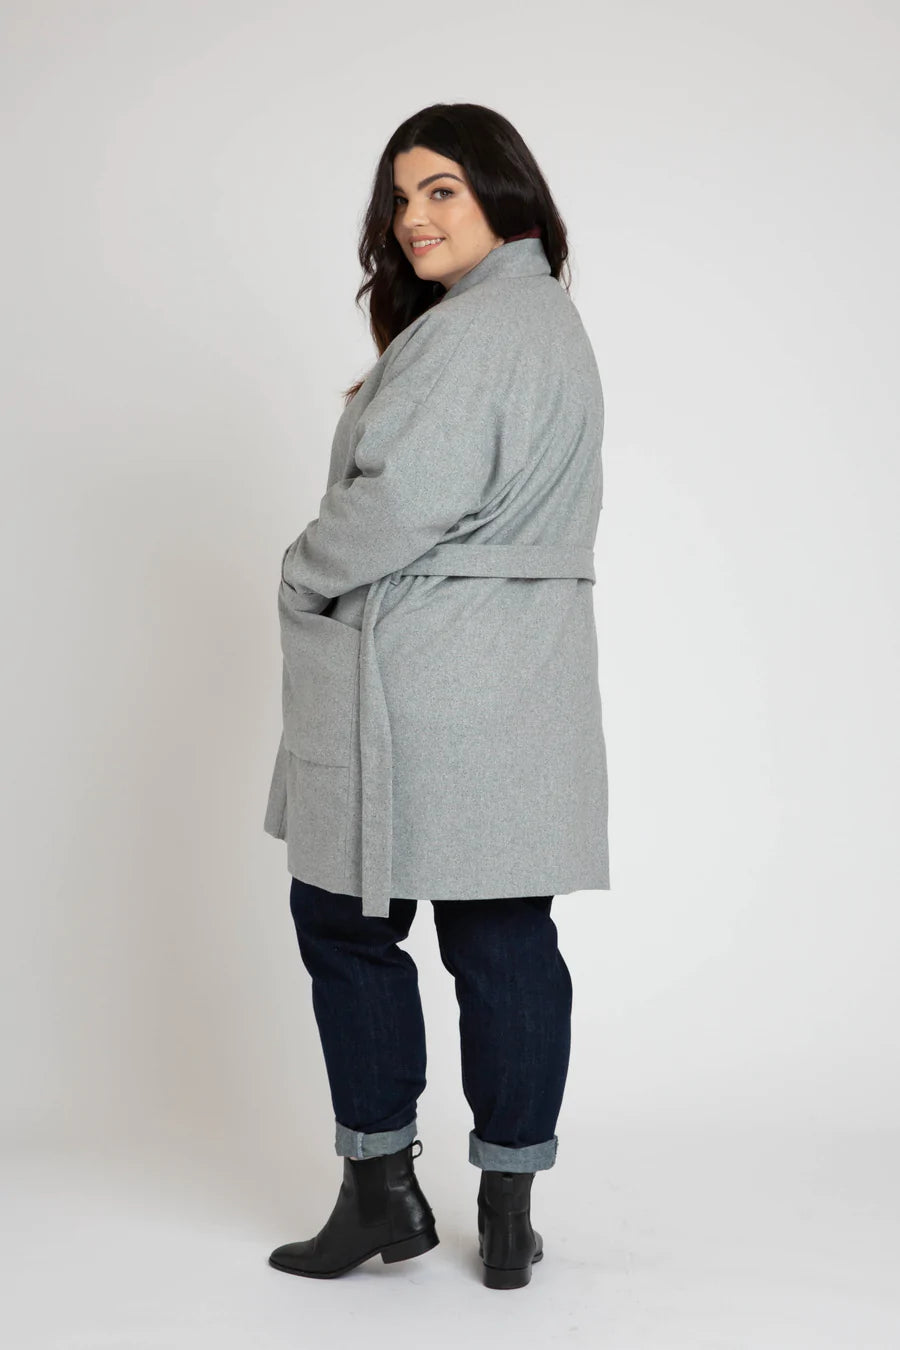 Megan Nielsen - Hovea Jacket | Core Fabrics